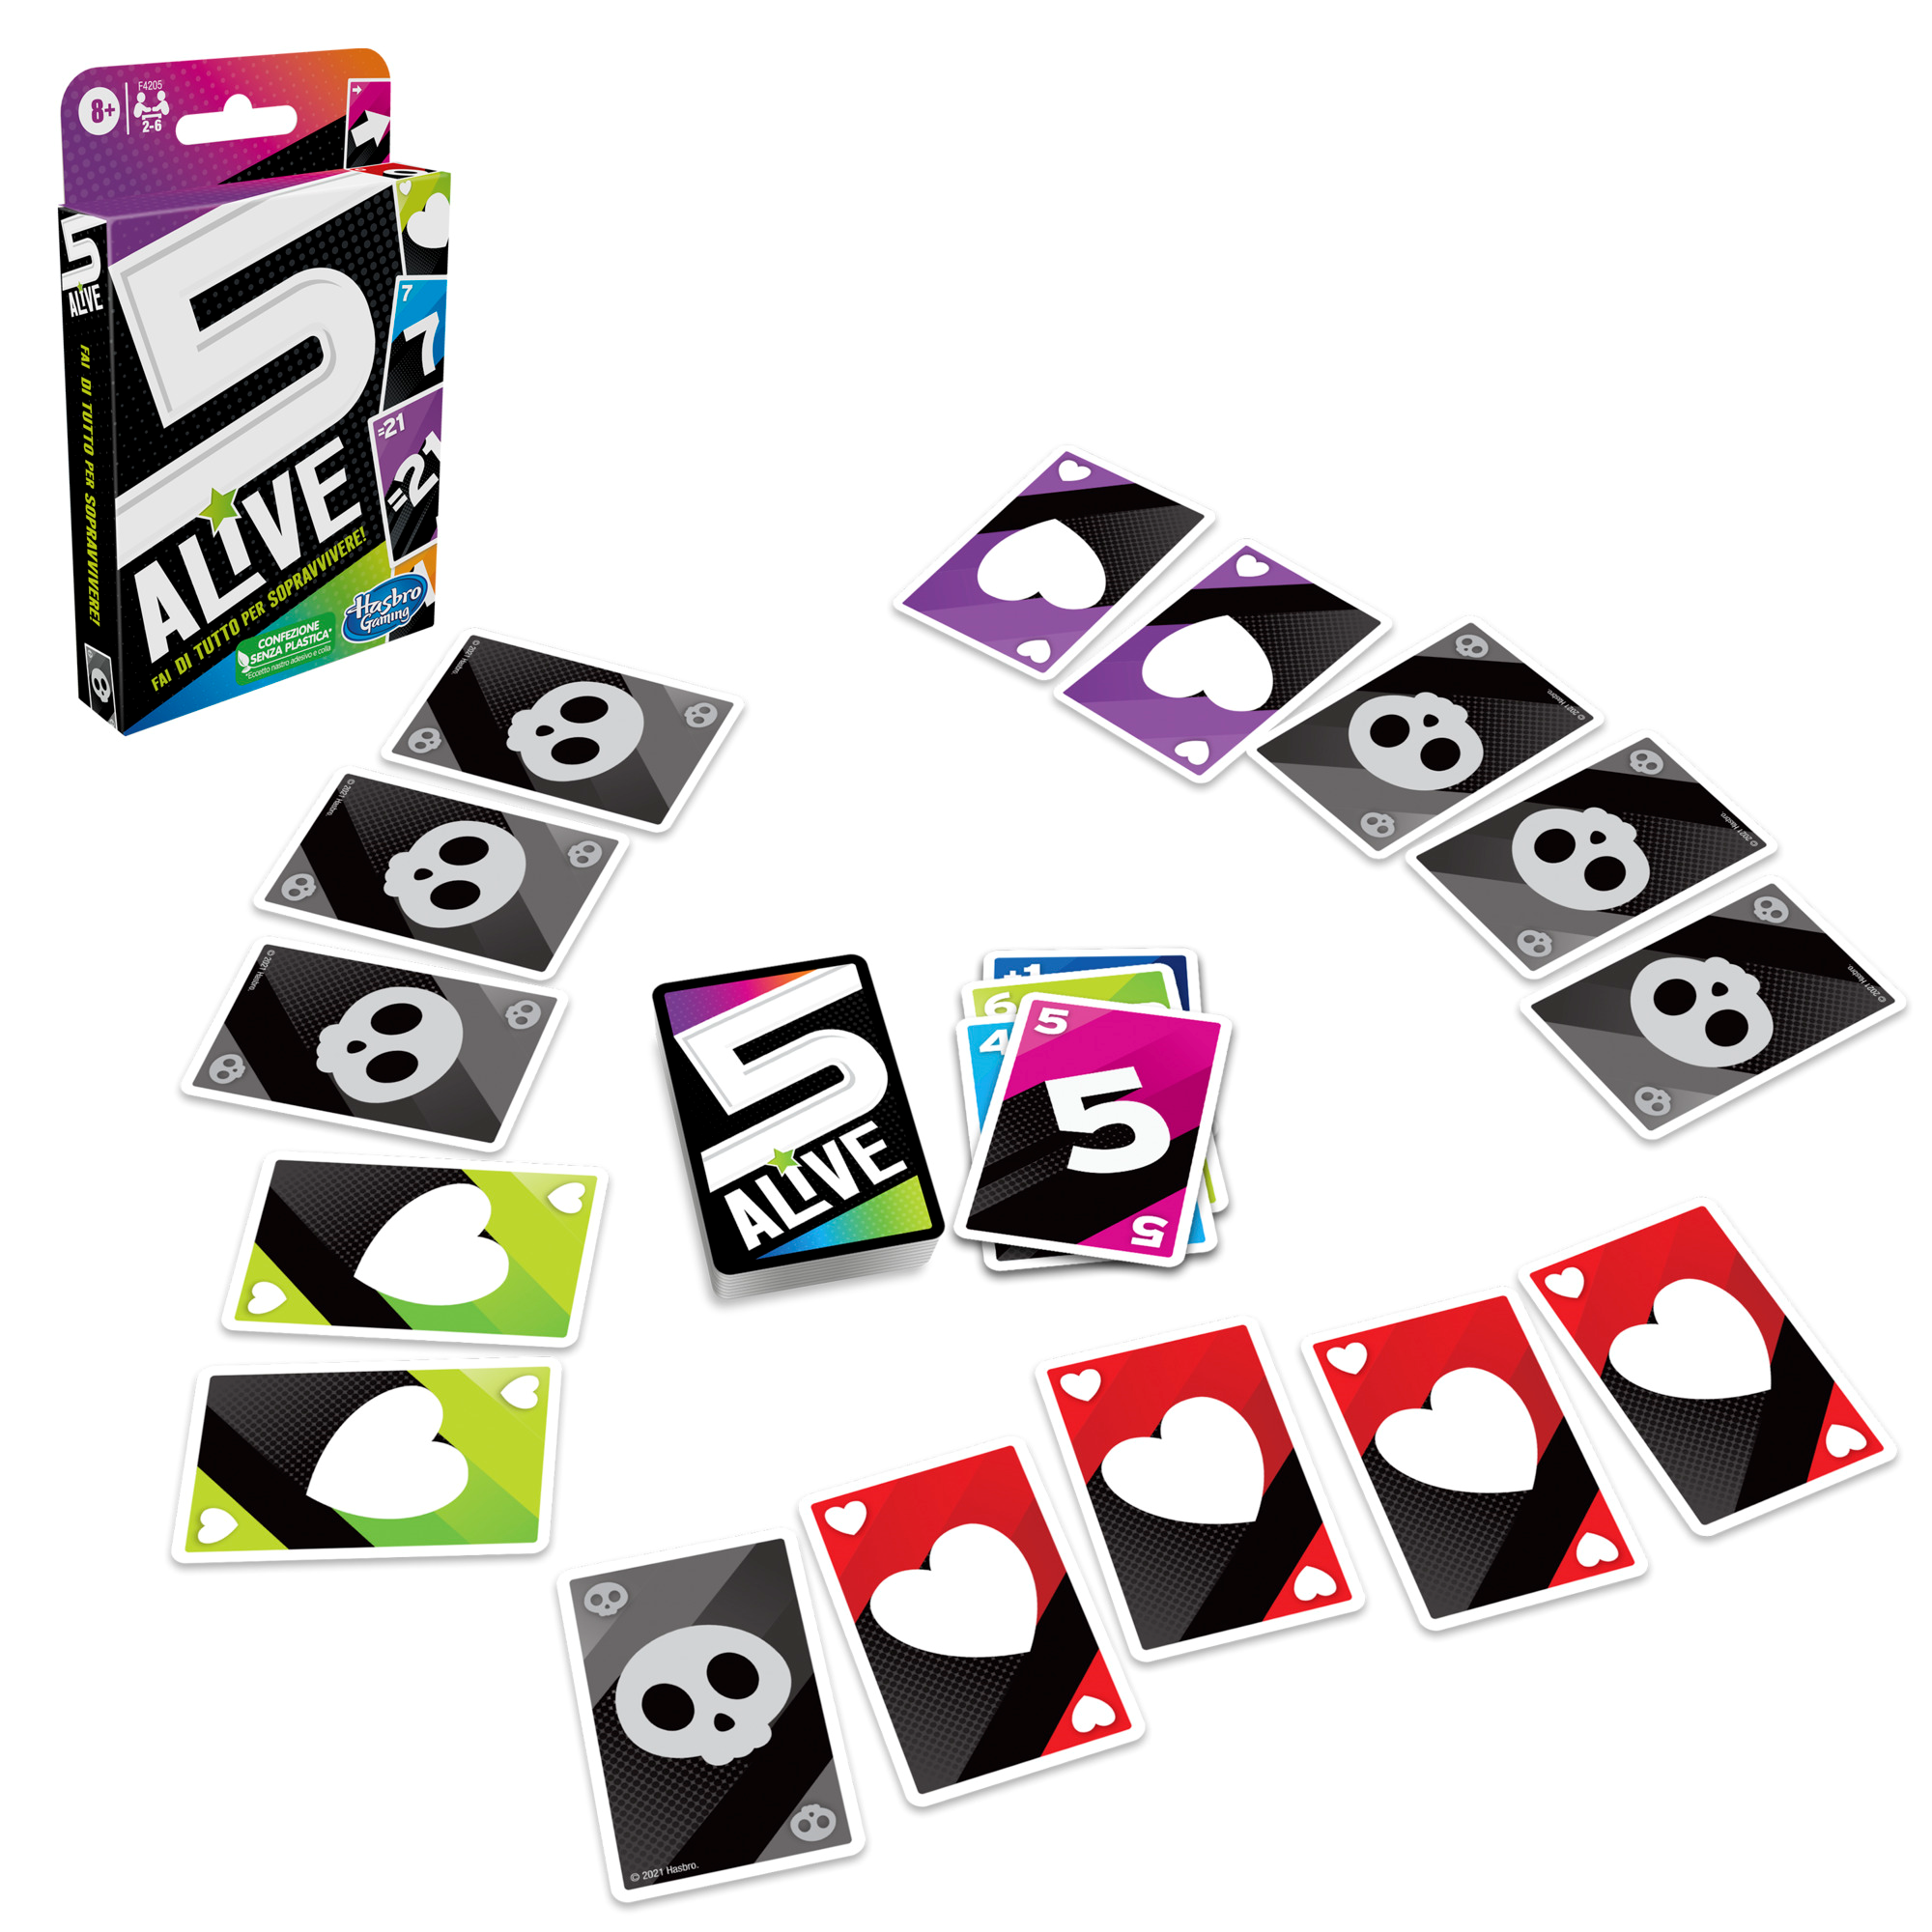 5 alive, gioco di carte veloce per famiglie, dagli 8 anni in su, per 2-6 giocatori - HASBRO GAMING